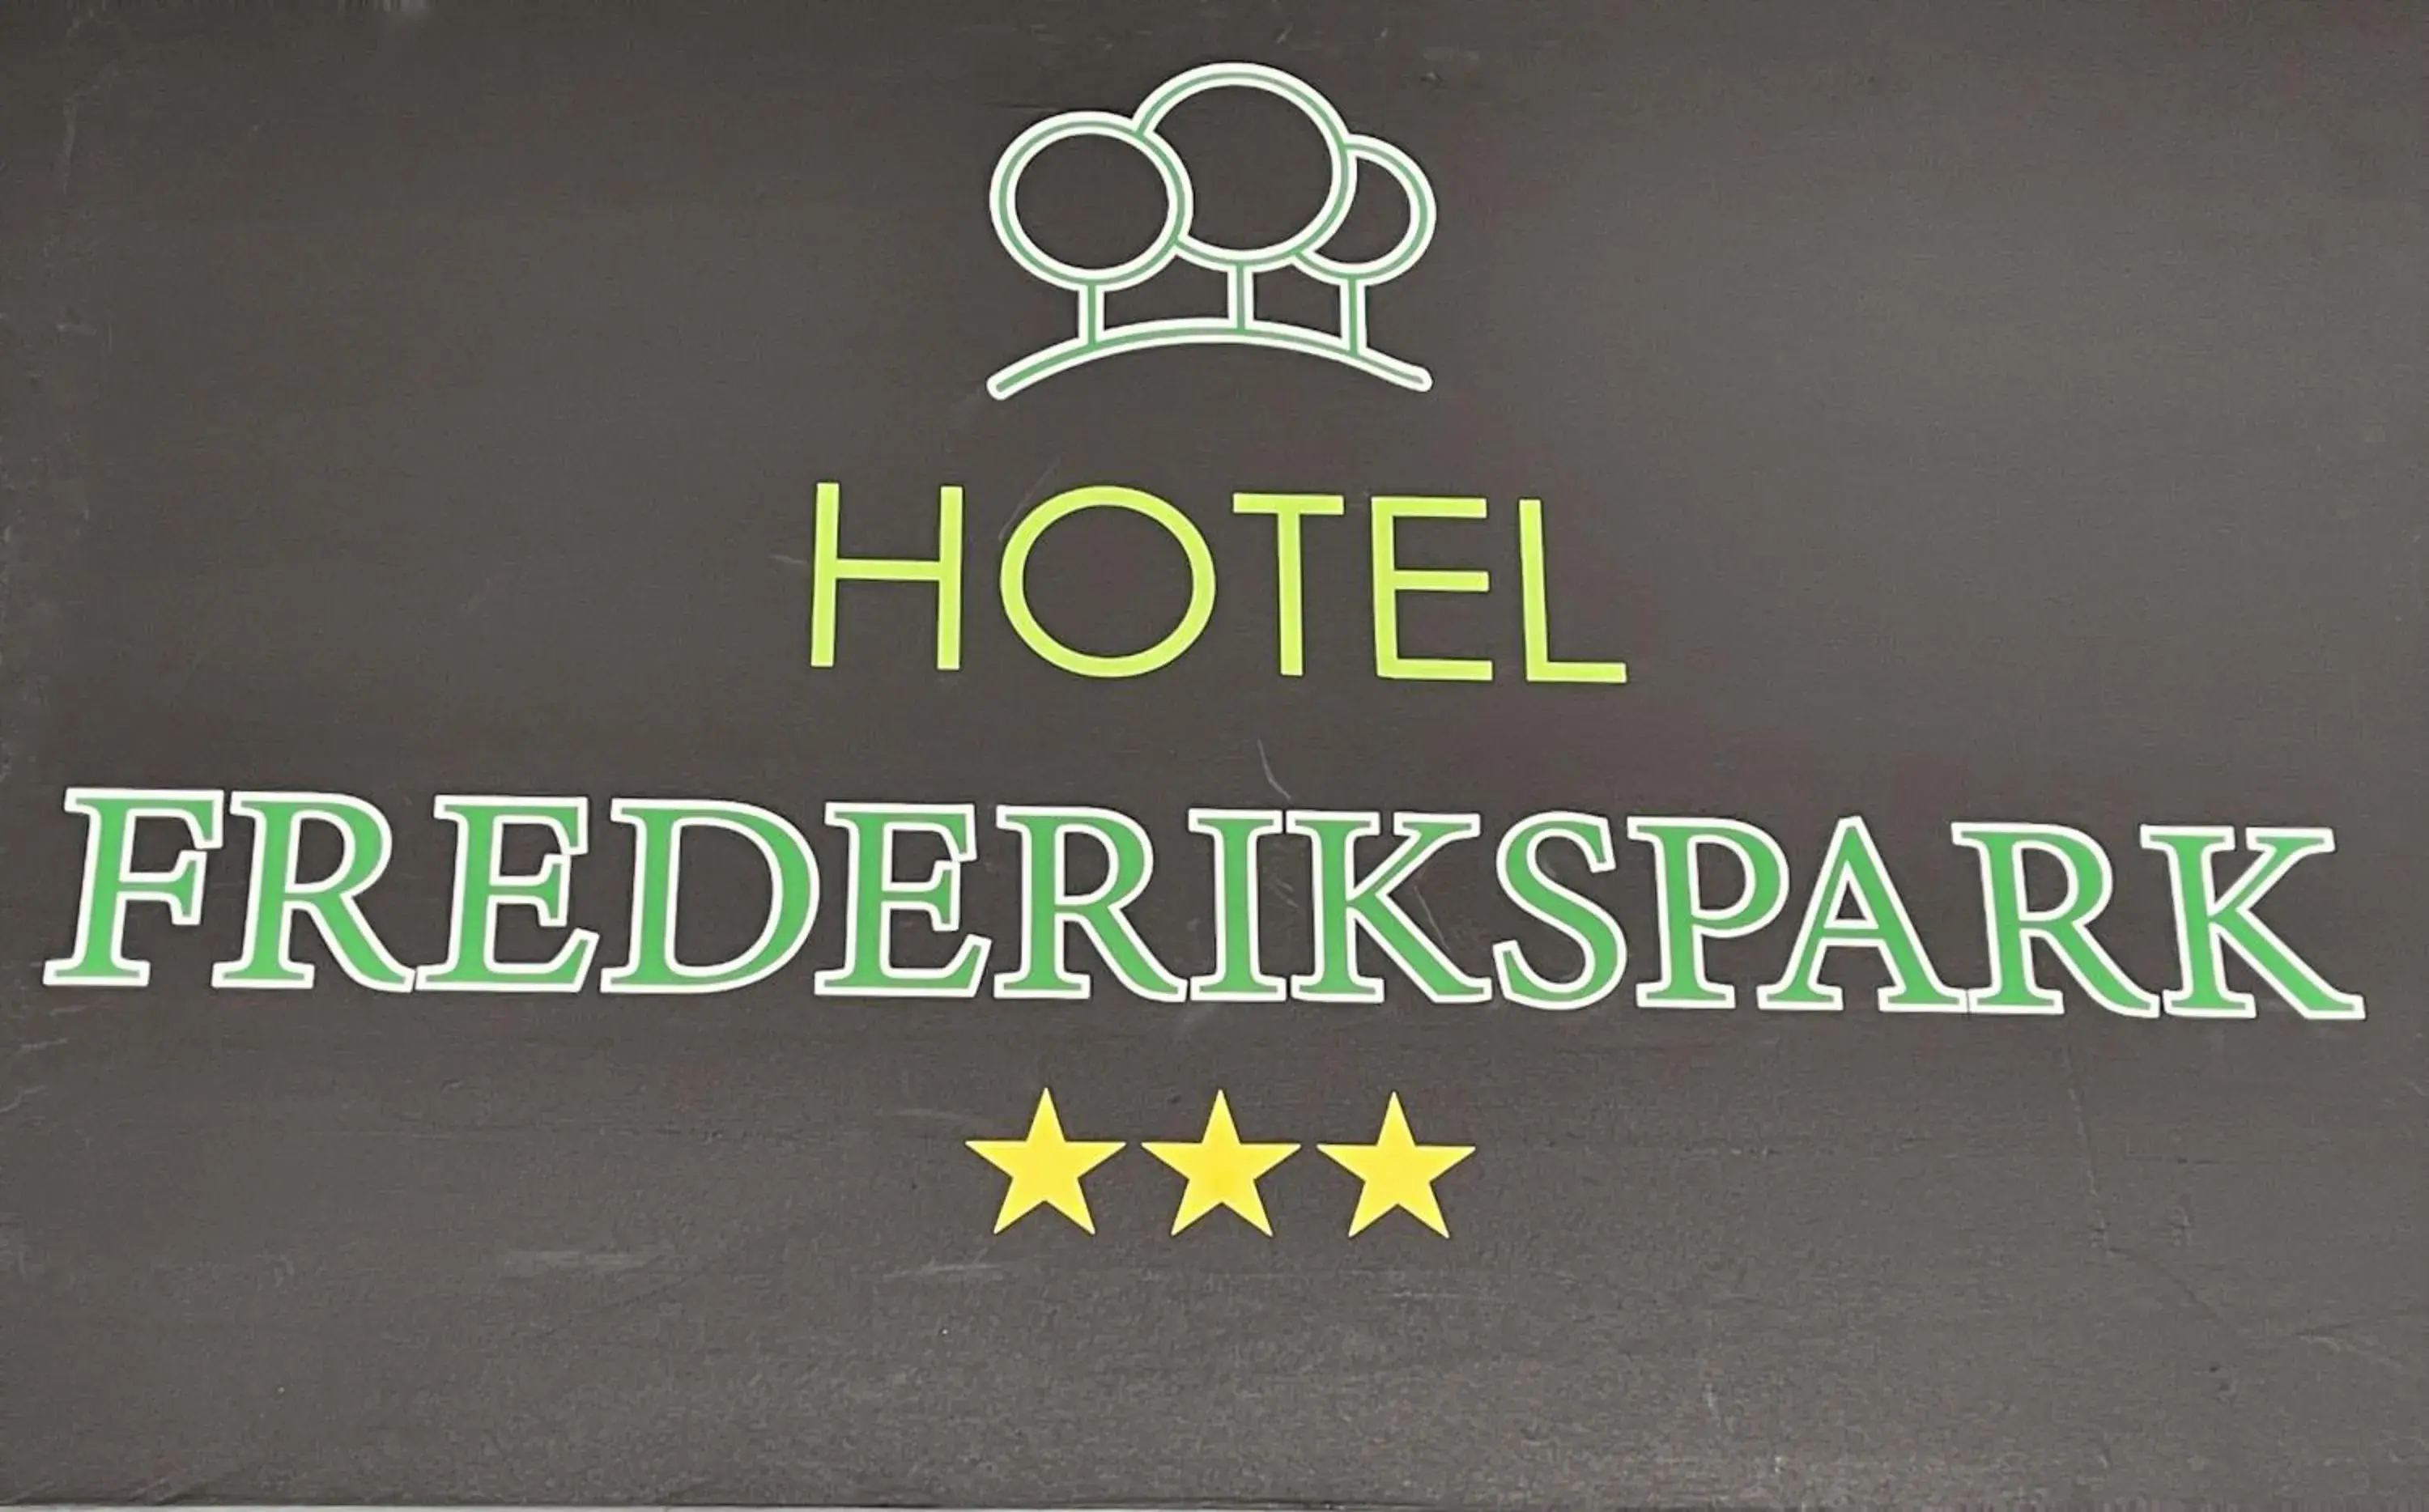 Property logo or sign in Hotel Frederikspark